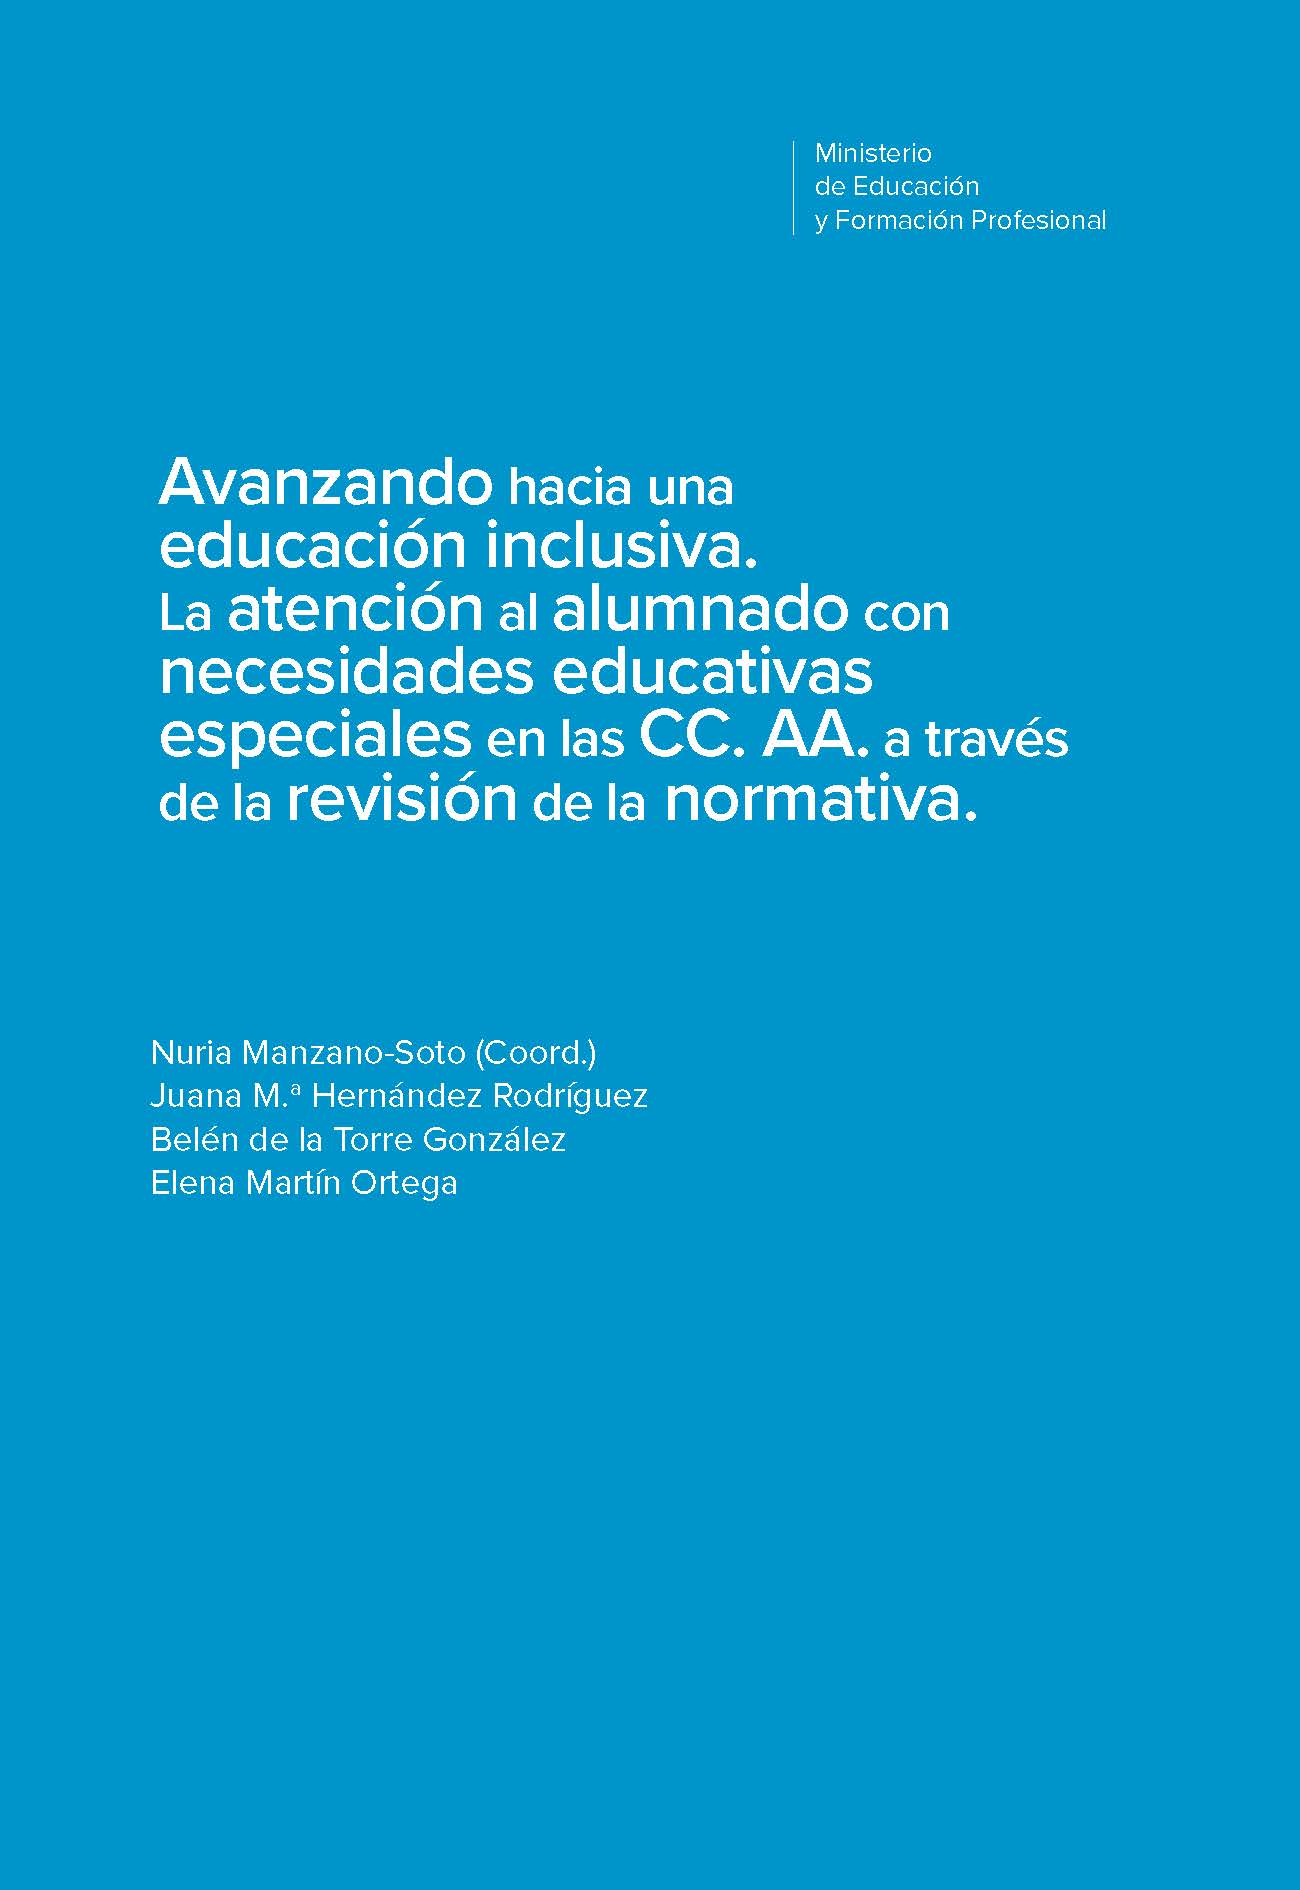 Imagen de portada del libro Avanzando hacia una educación inclusiva. La atención al alumnado con necesidades educativas especiales en las CC. AA. a través de la revisión de la normativa.